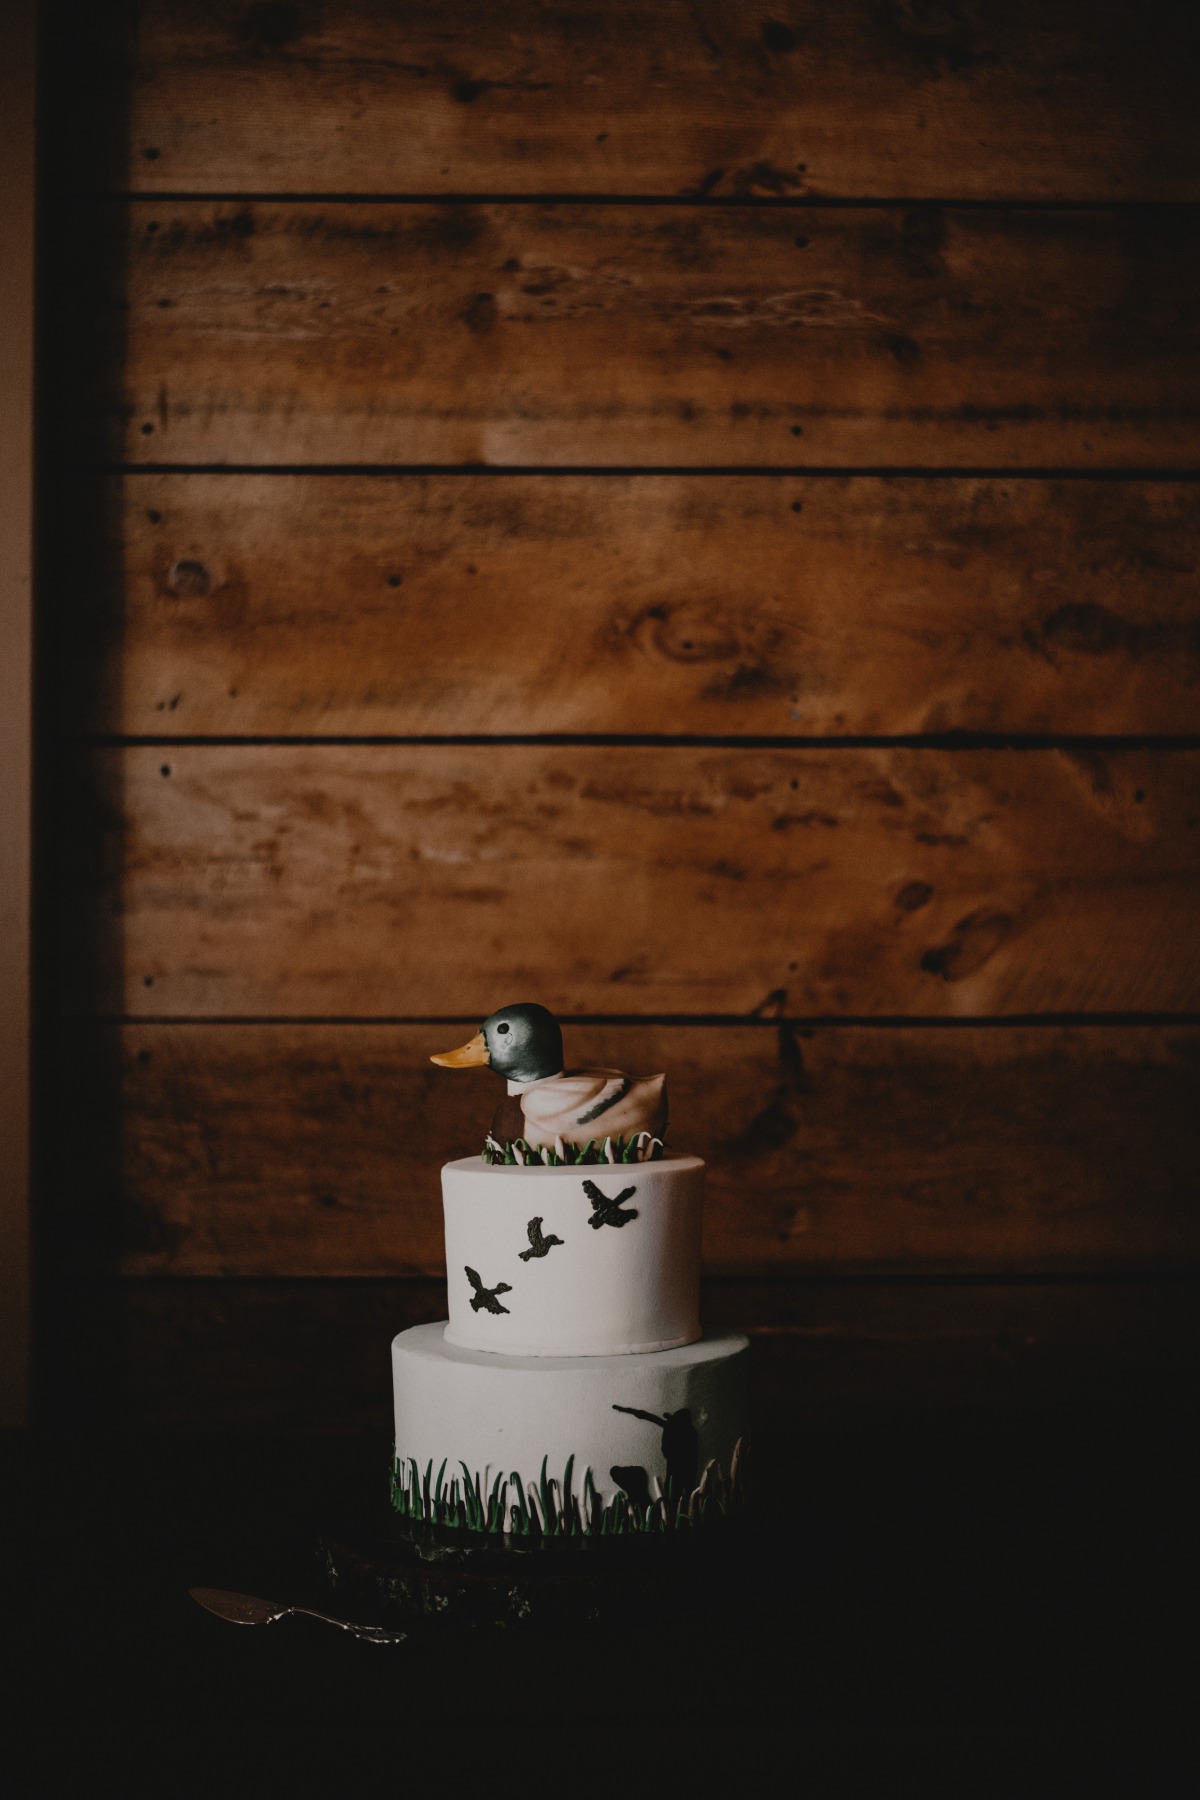 An Elegantly Planned Rustic Barn Wedding